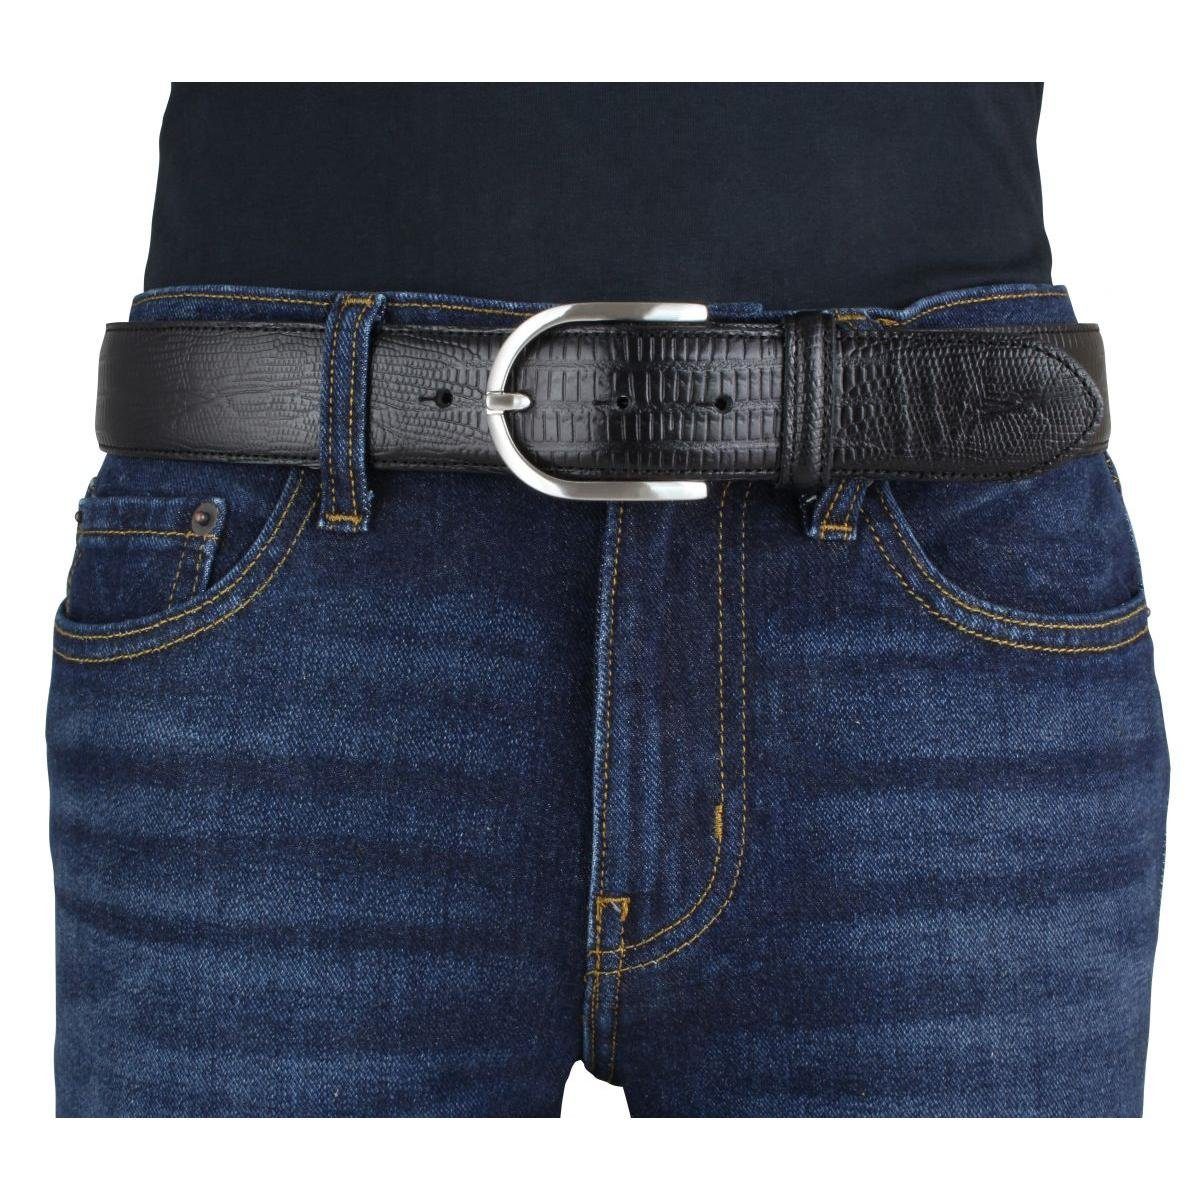 Damen Silber Damen-Gürtel Schwarz, 40mm für Jeans-Gürtel - BELTINGER mit Rept cm Ledergürtel 4 Echsenprägung